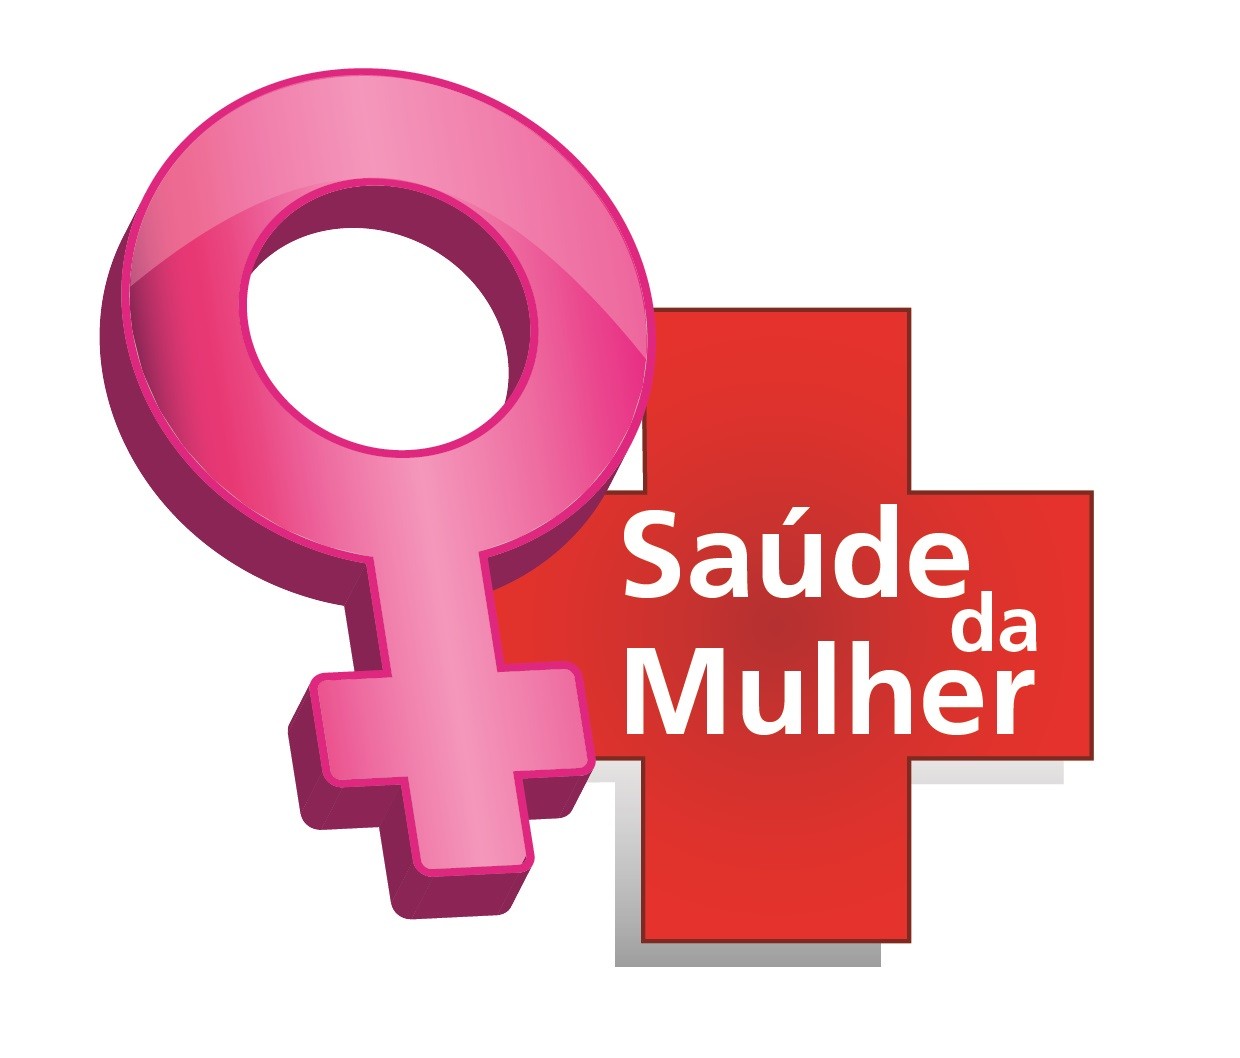 Saude Internacional Logo photo - 1